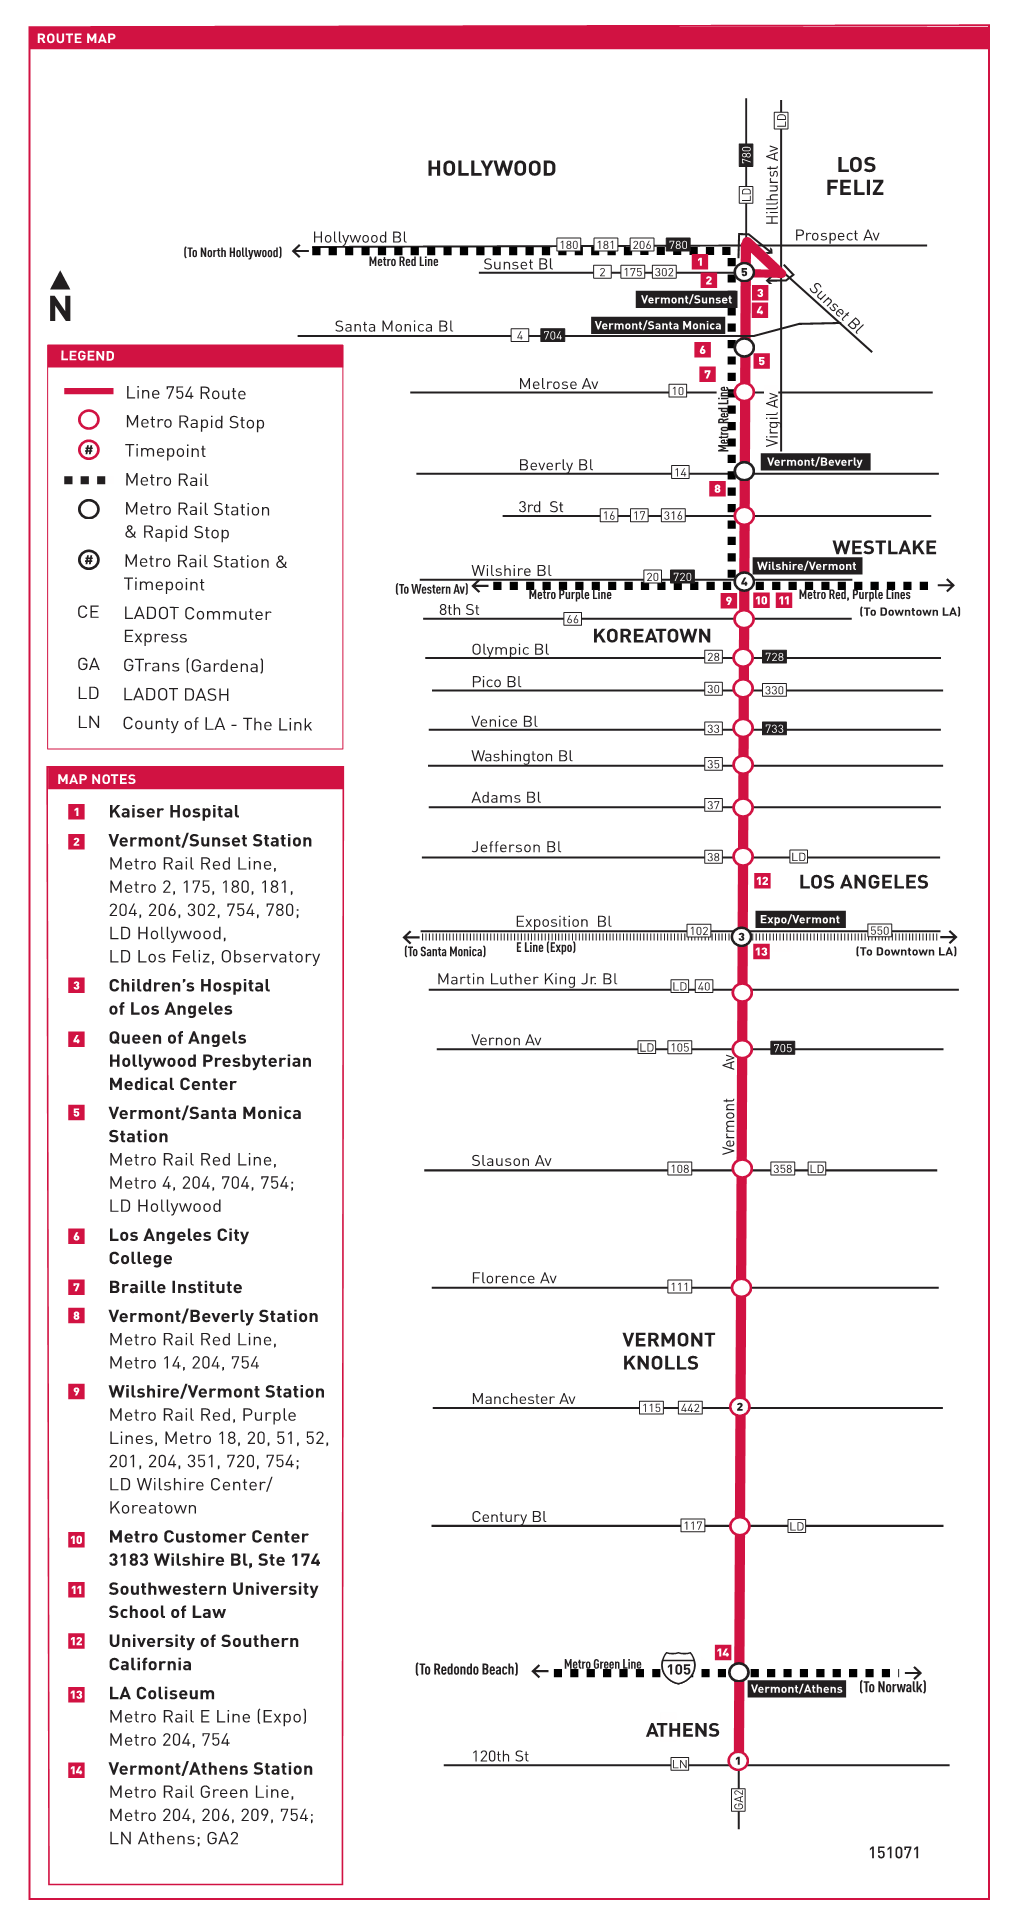 Line 754 (12/15/19) -- Metro Rapid